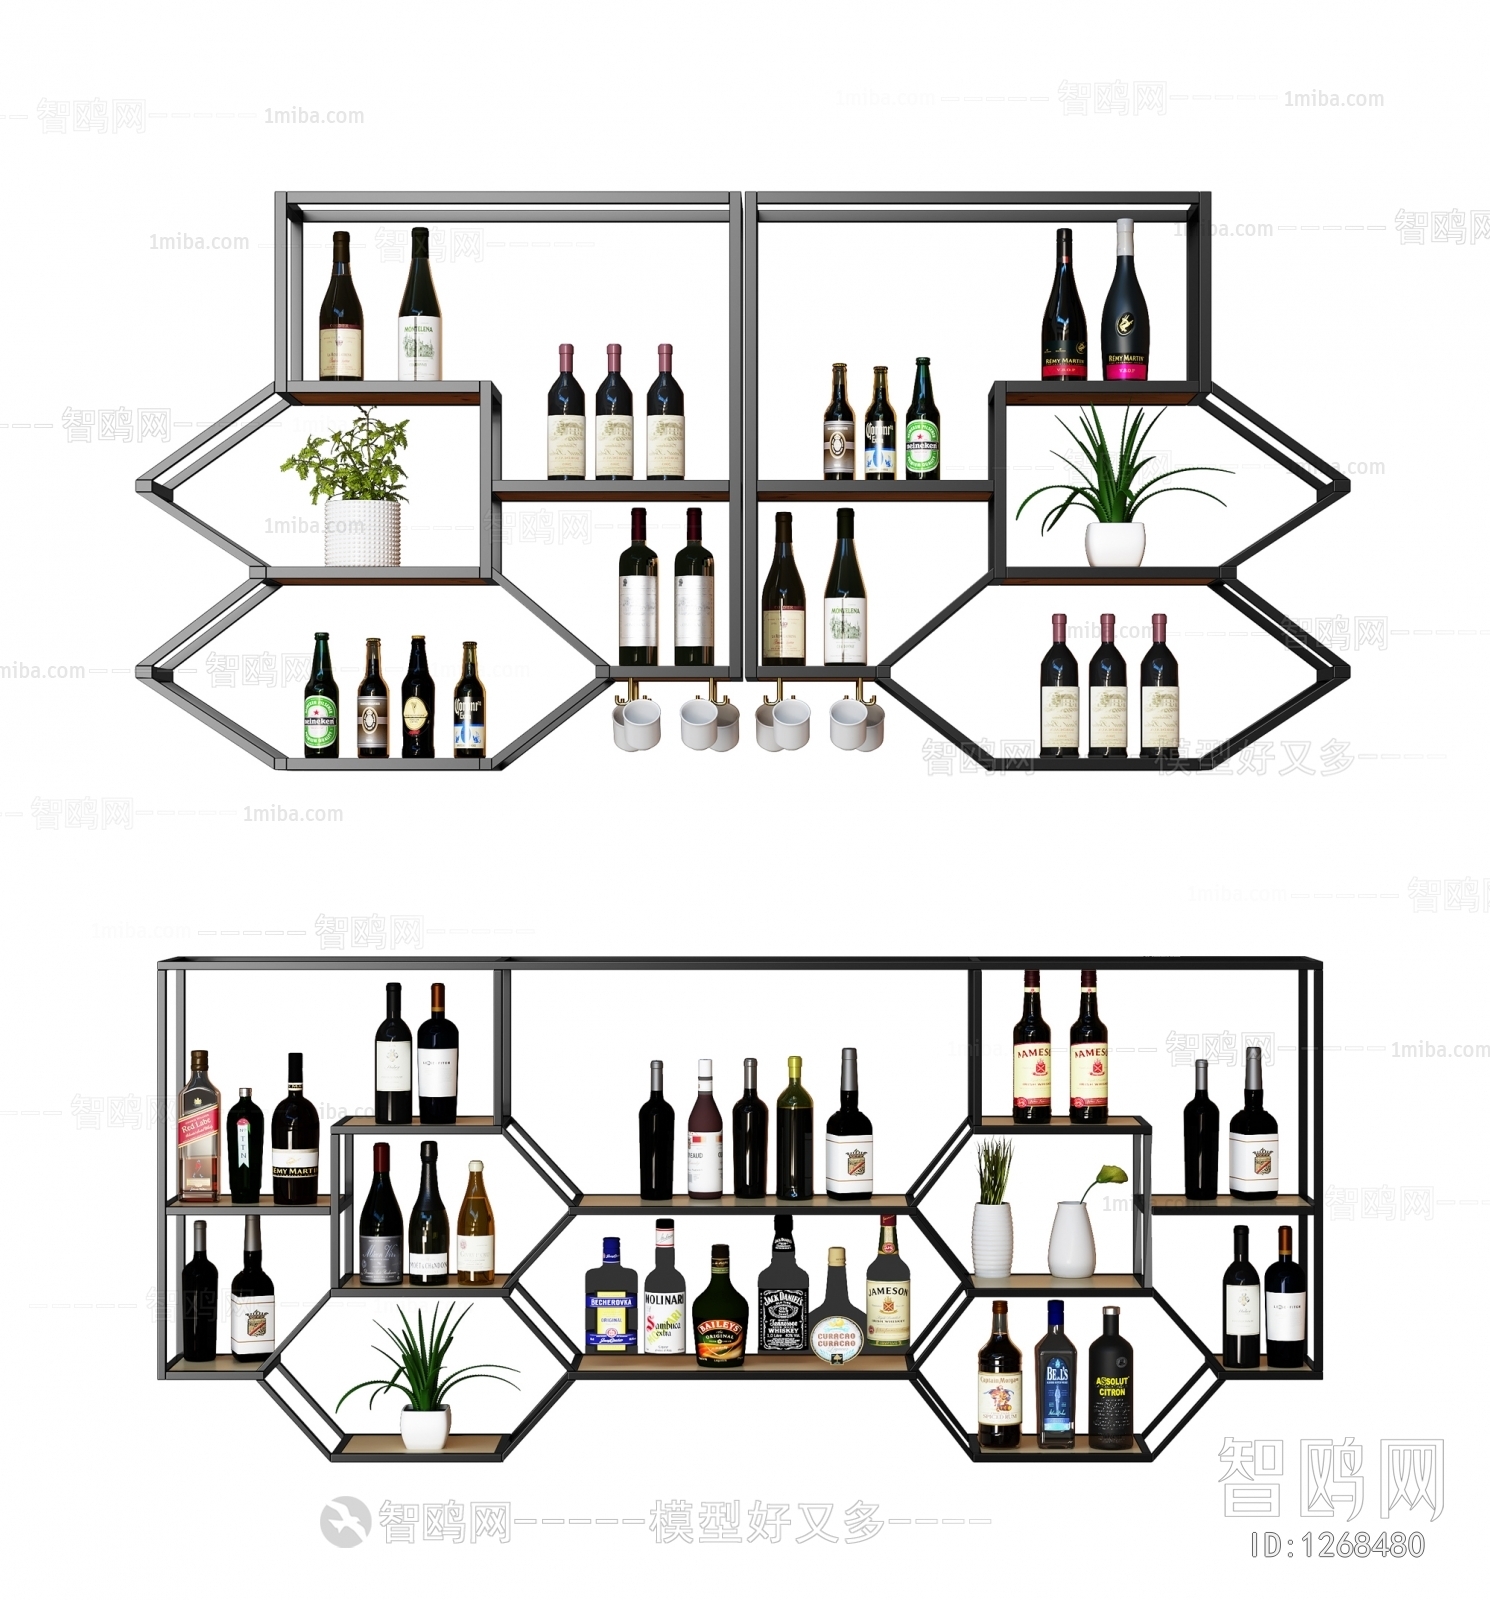 Industrial Style Wine Rack